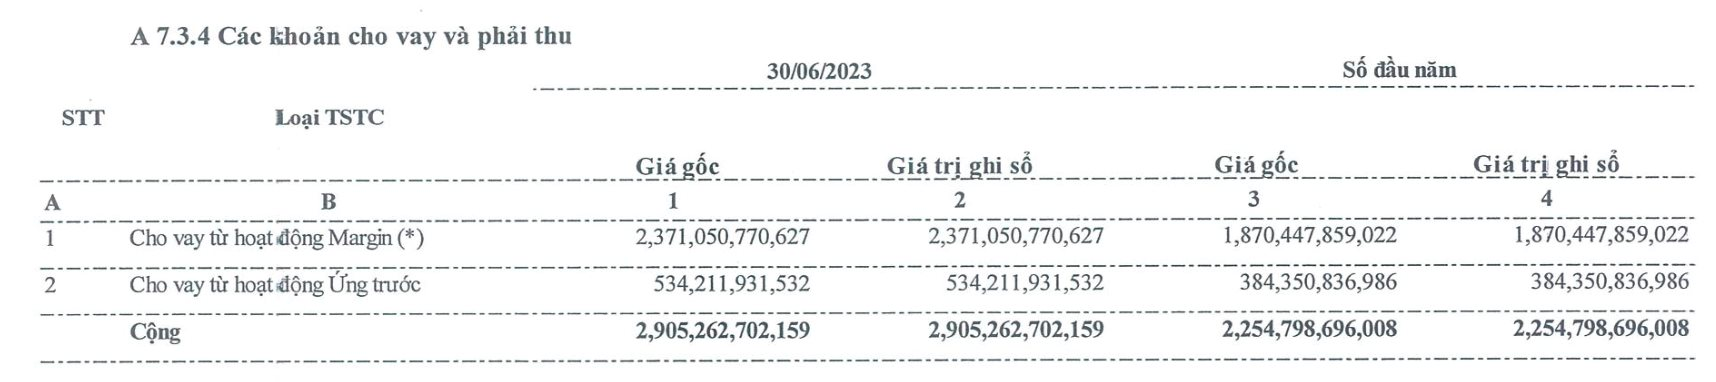 Tự doanh khởi sắc, Chứng khoán Bảo Việt (BVSC) báo lãi quý 2 tăng 388% - Ảnh 3.